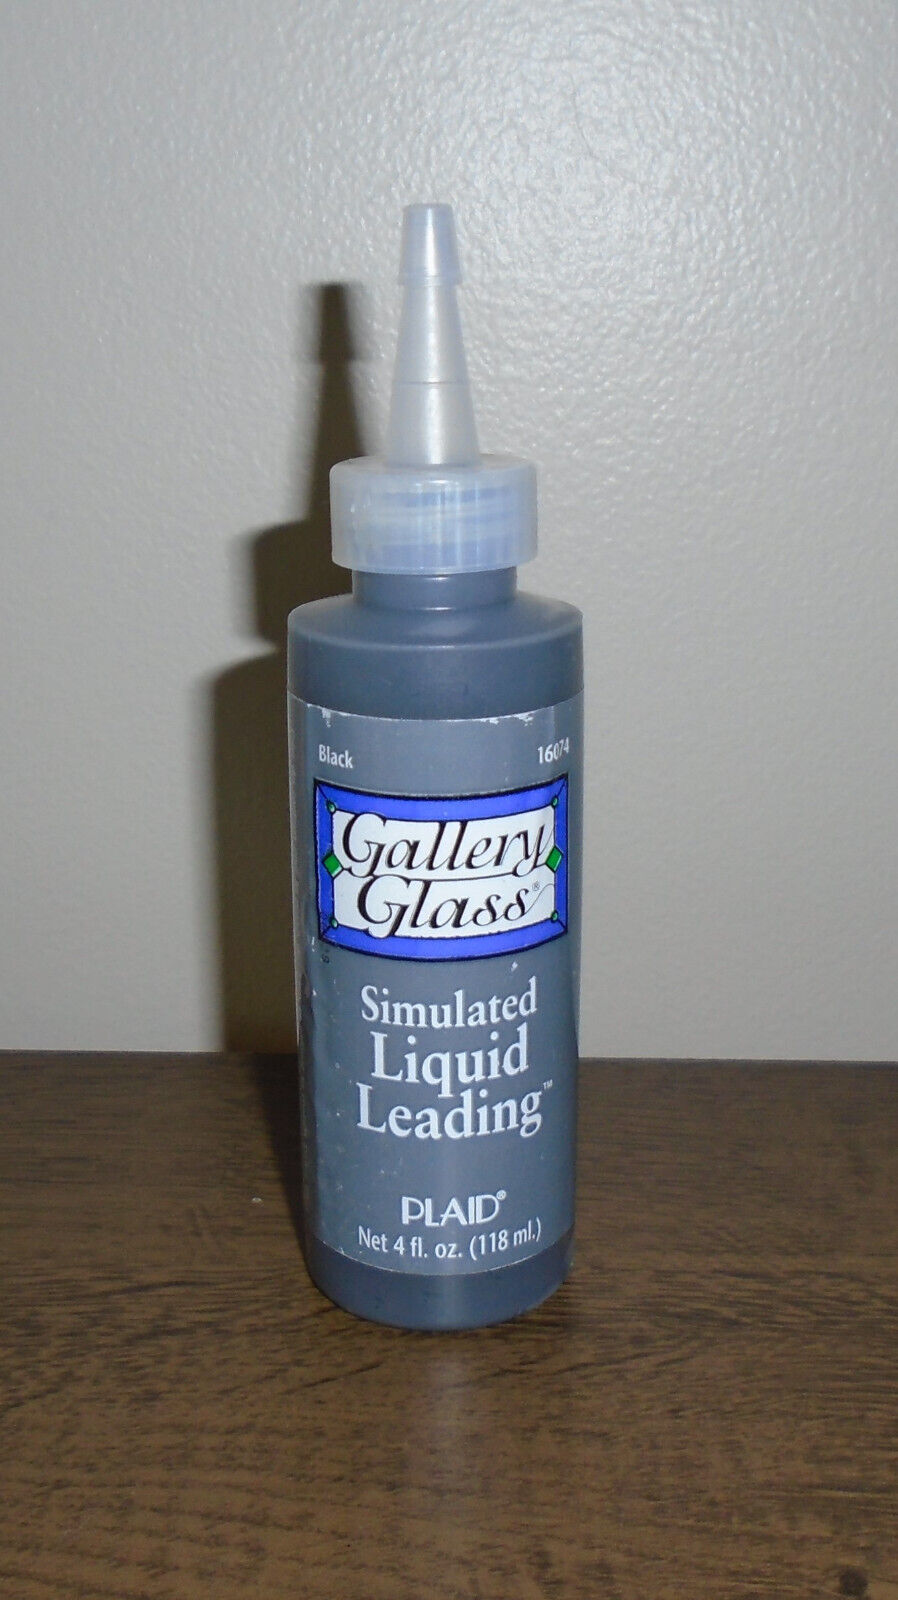 Plaid Gallery Glass Black Liquid Leading 4oz NOS - $9.90